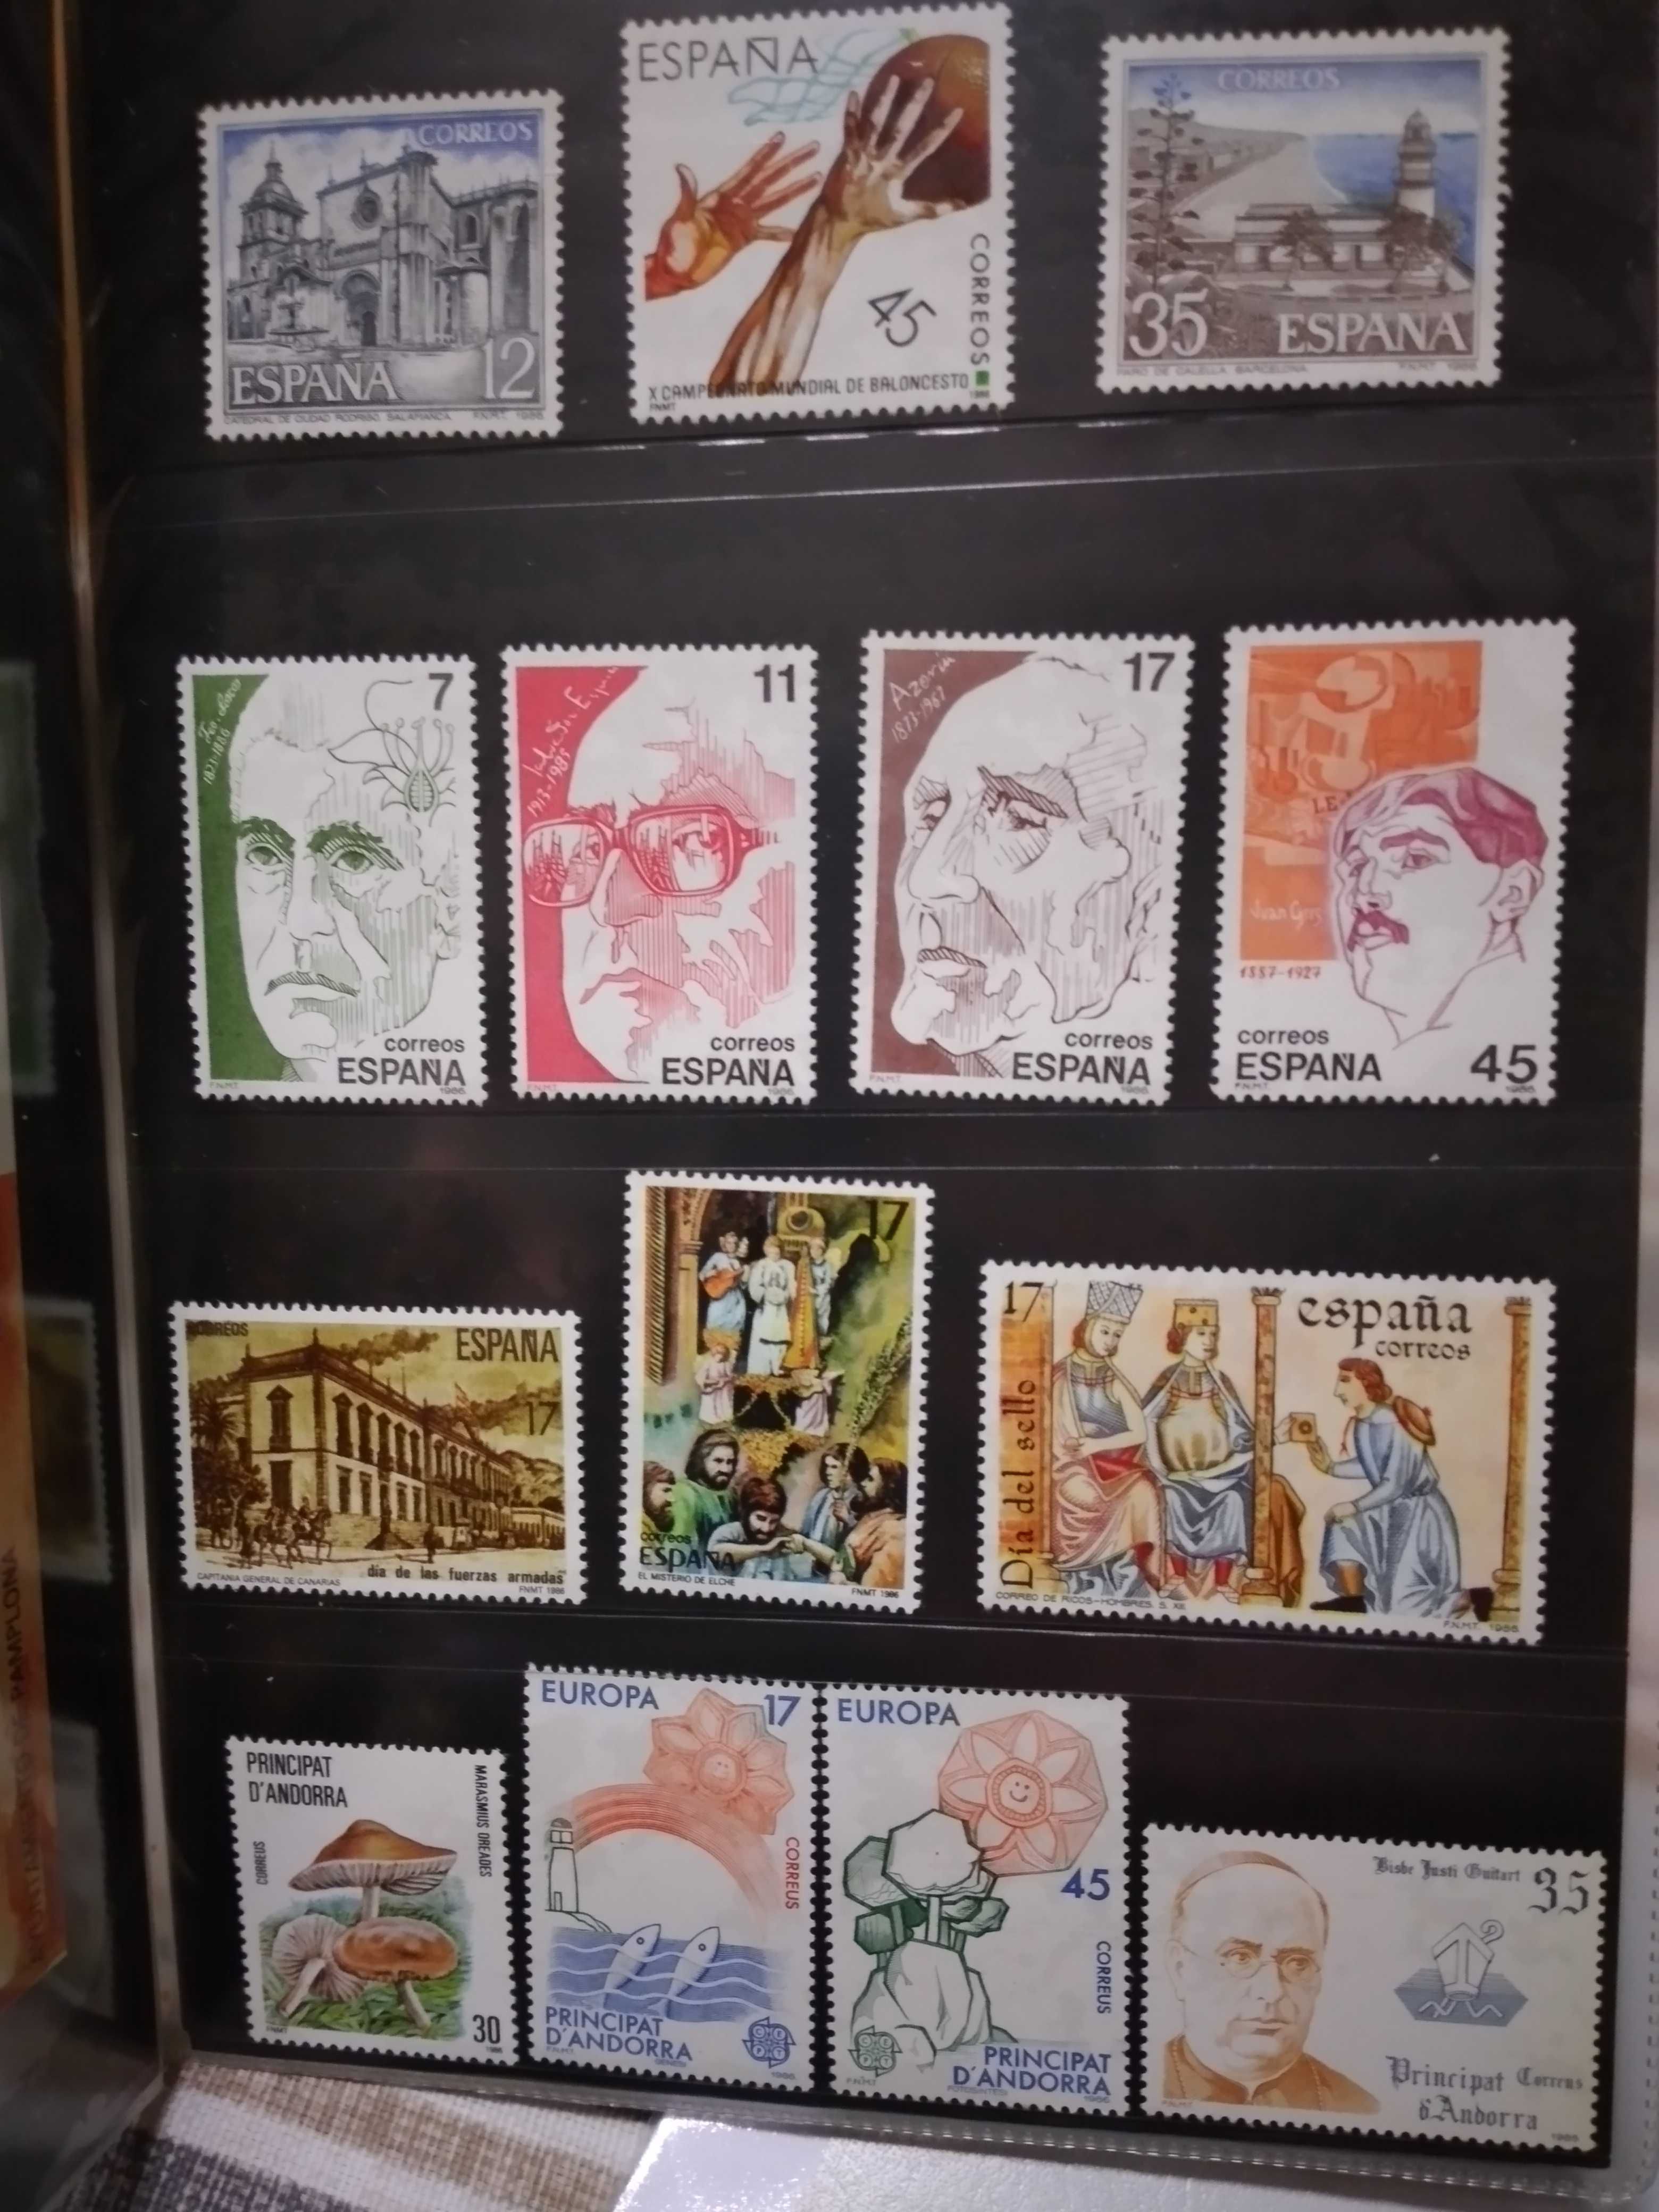 Coleção de selos e postais espanhois